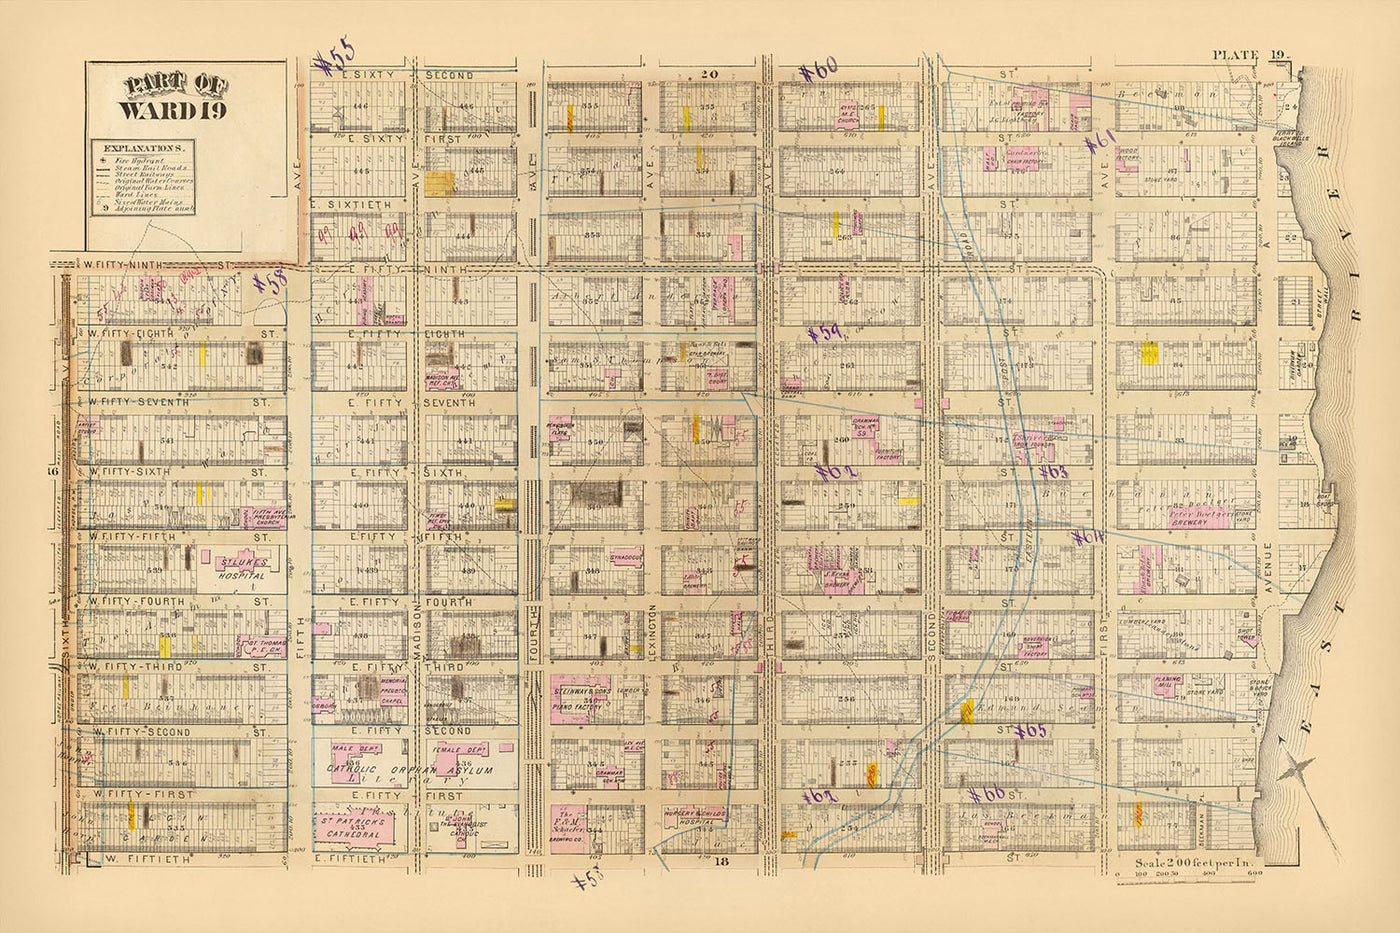 Ancienne carte de Midtown East, New York, 1879 : hôpital St. Luke, cathédrale Saint-Patrick, usine de pianos Steinway & Sons, quartier 19